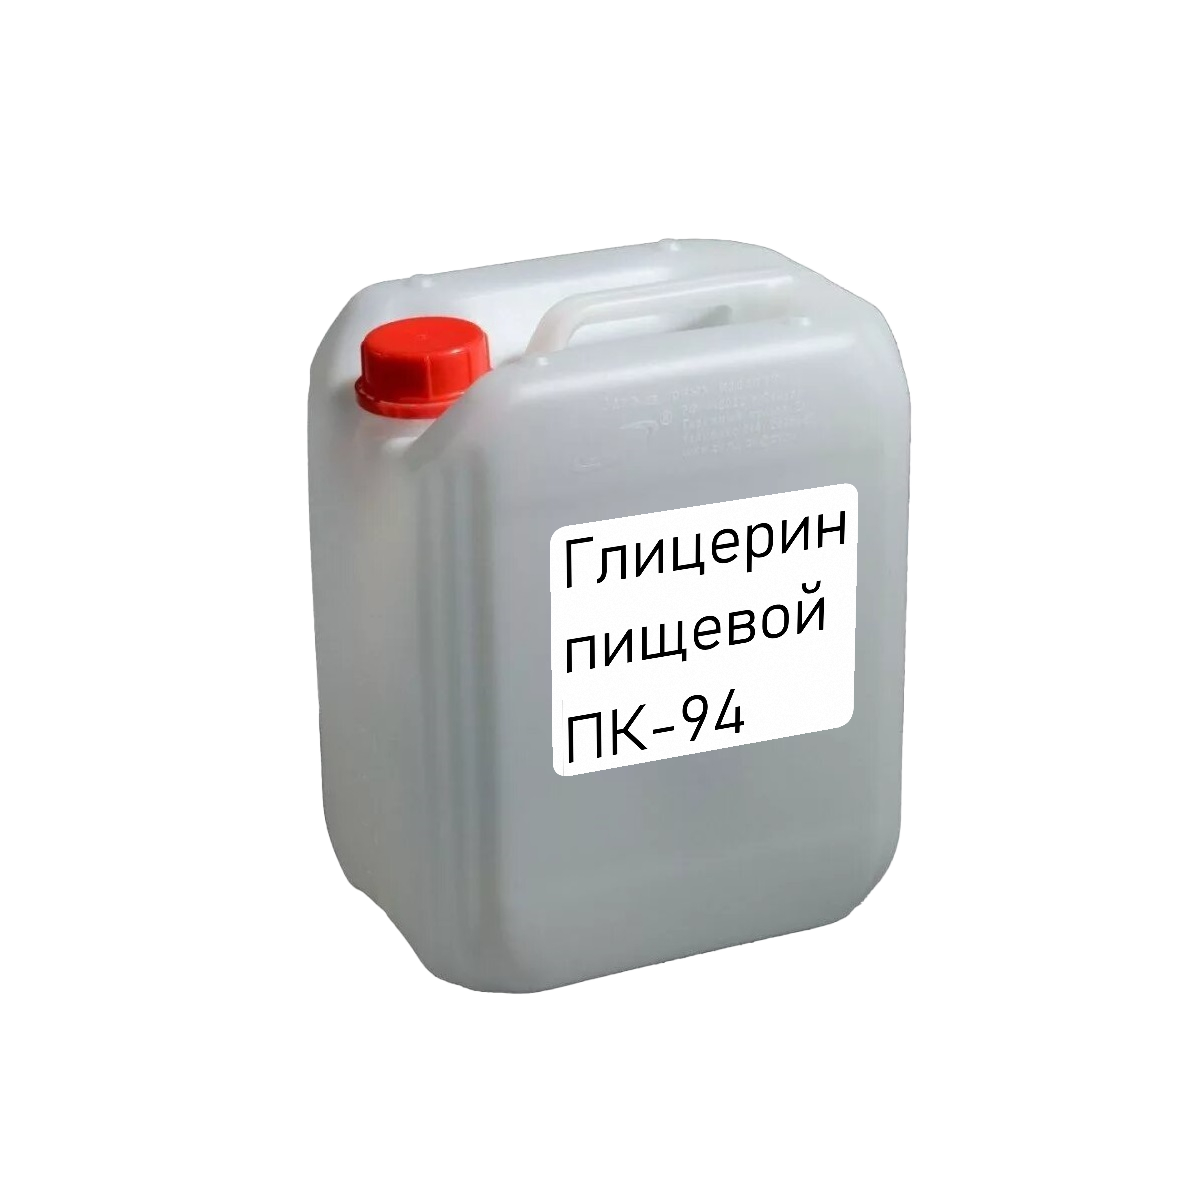 Глицерин ПК-94 ф. 25 кг, производство Россия